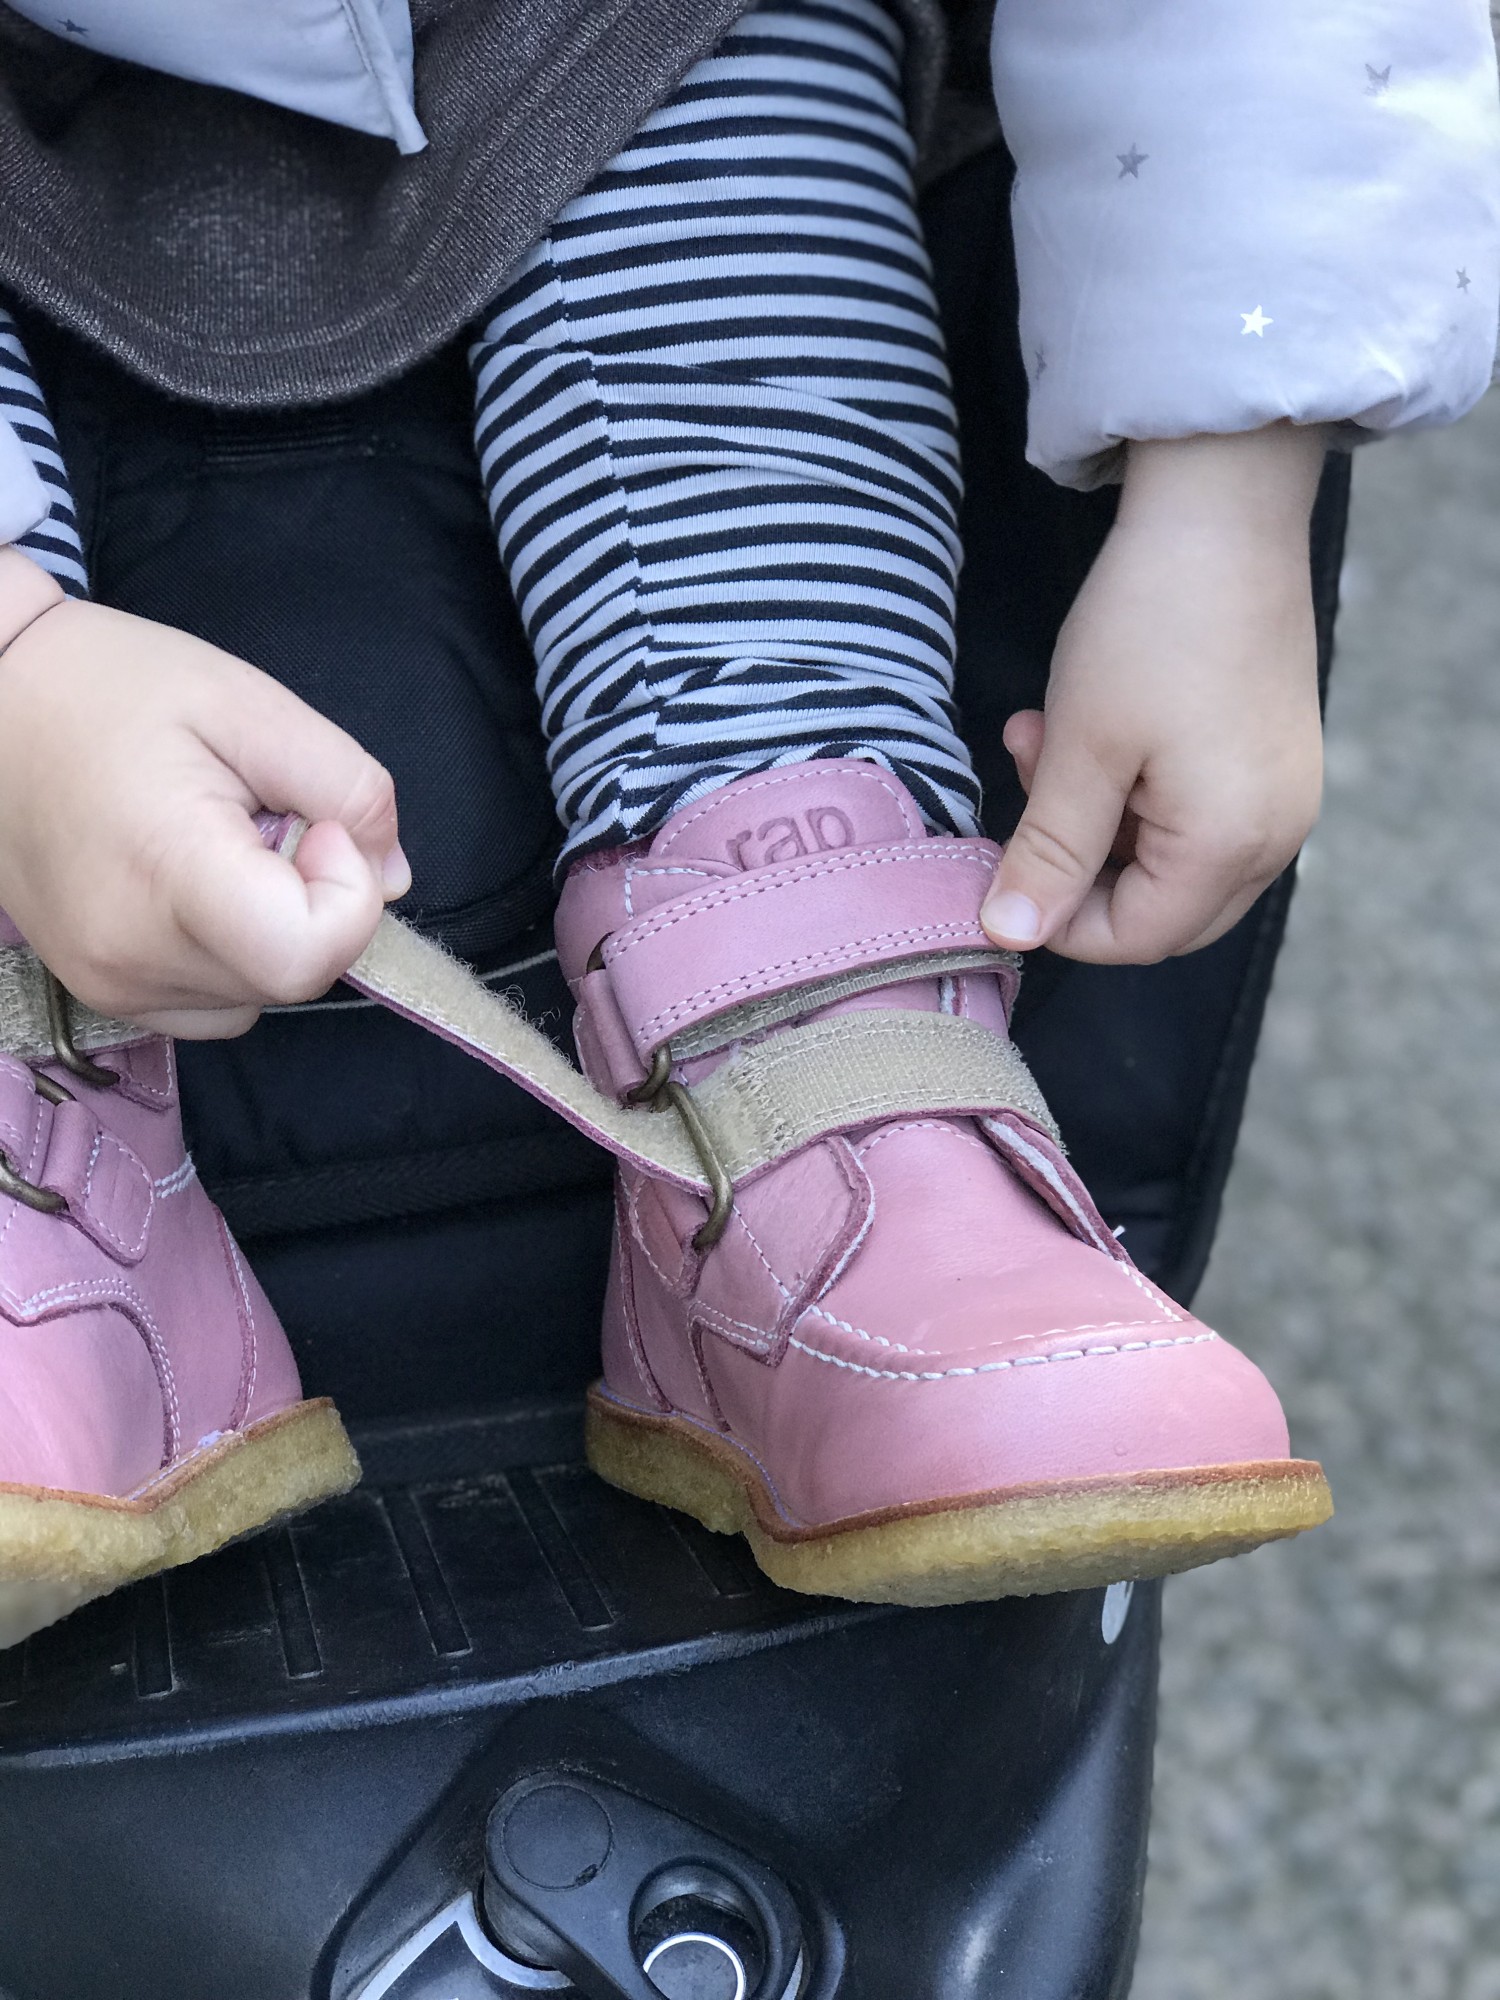 Test af Arauto RAP børnestøvler fra Growingfeet.dk | Børn | Testfamilien